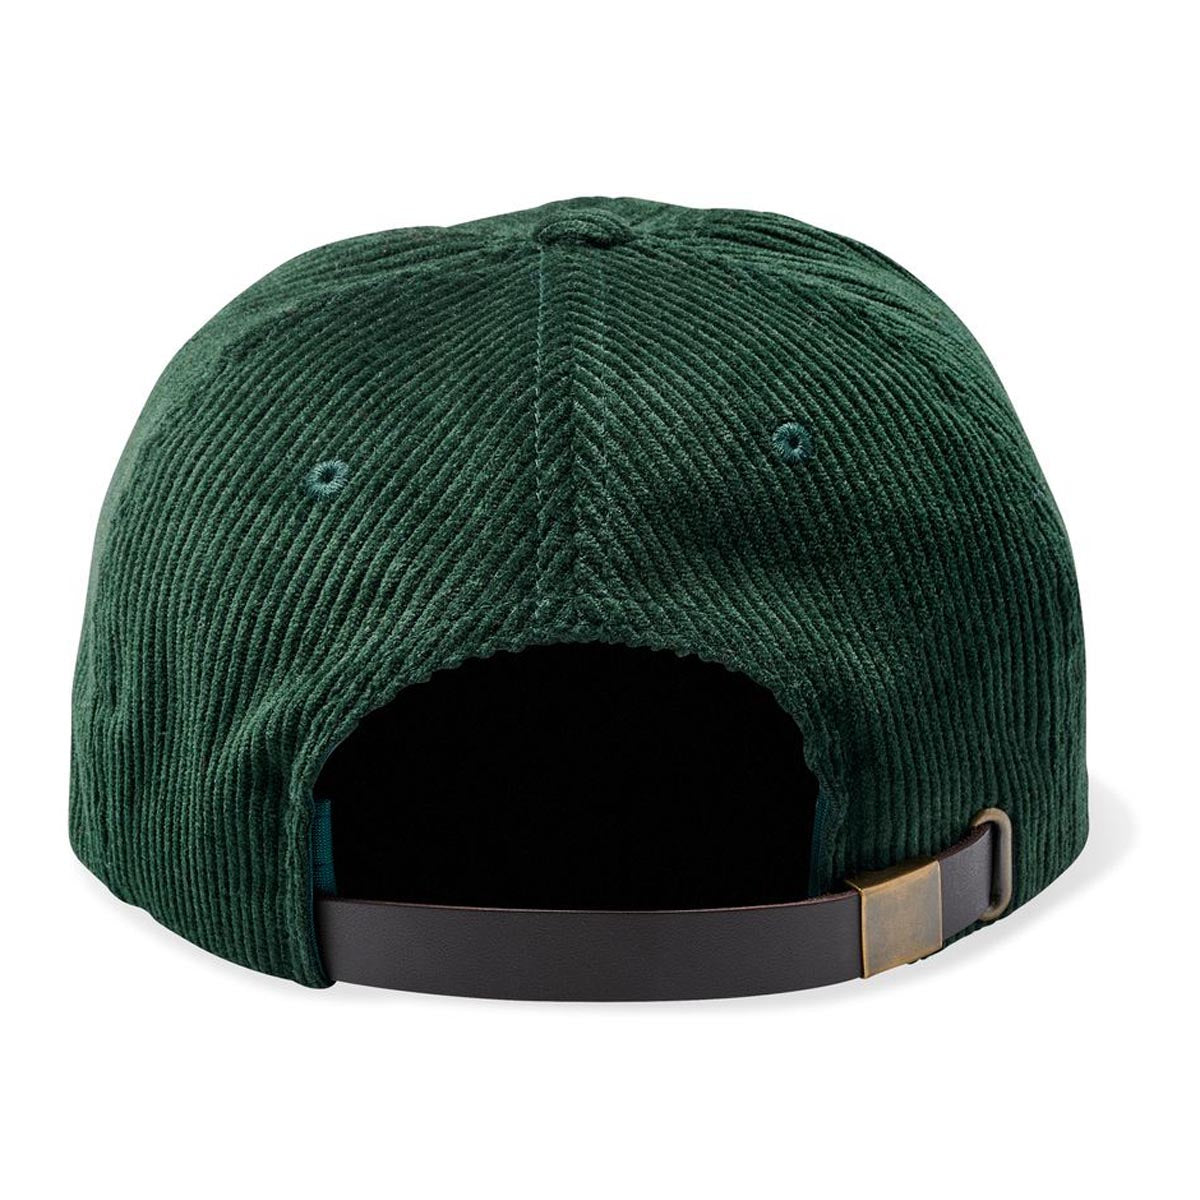 Brixton Parsons Lp Hat - Emerald Cord image 2